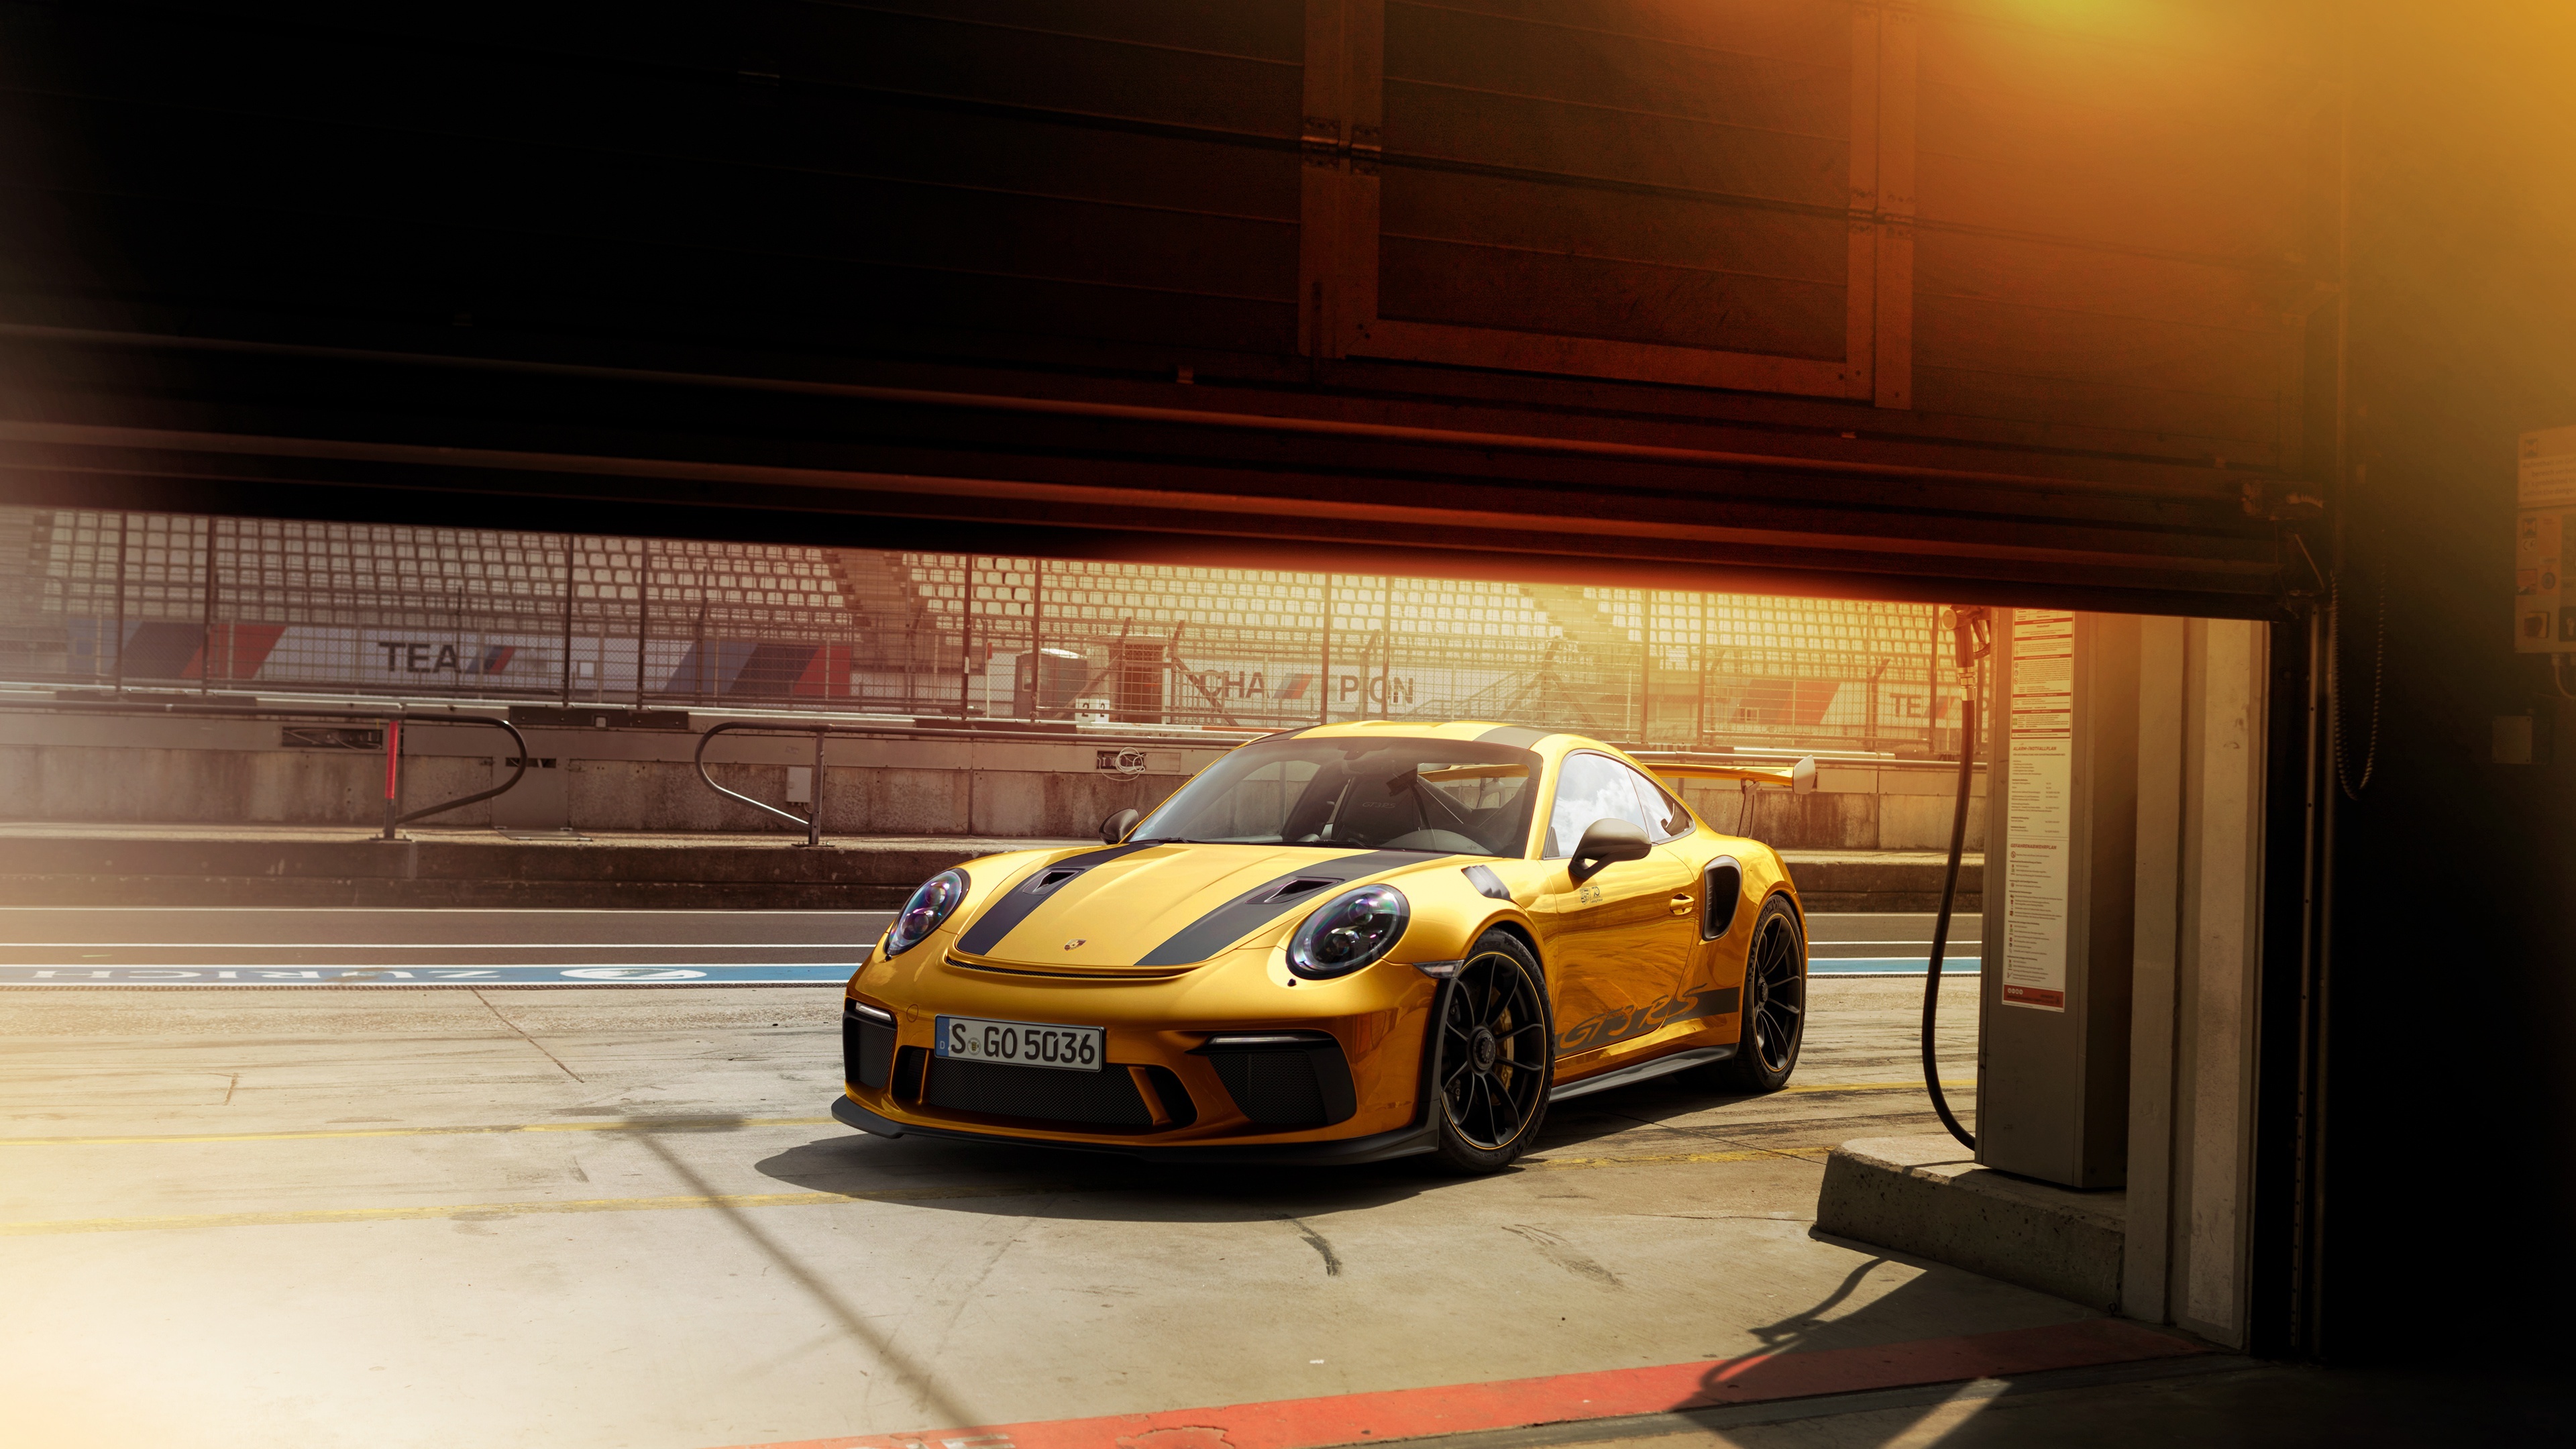 Motorsports: Porsche 911 GT3, A high-performance homologation sports car. 3840x2160 4K Wallpaper.